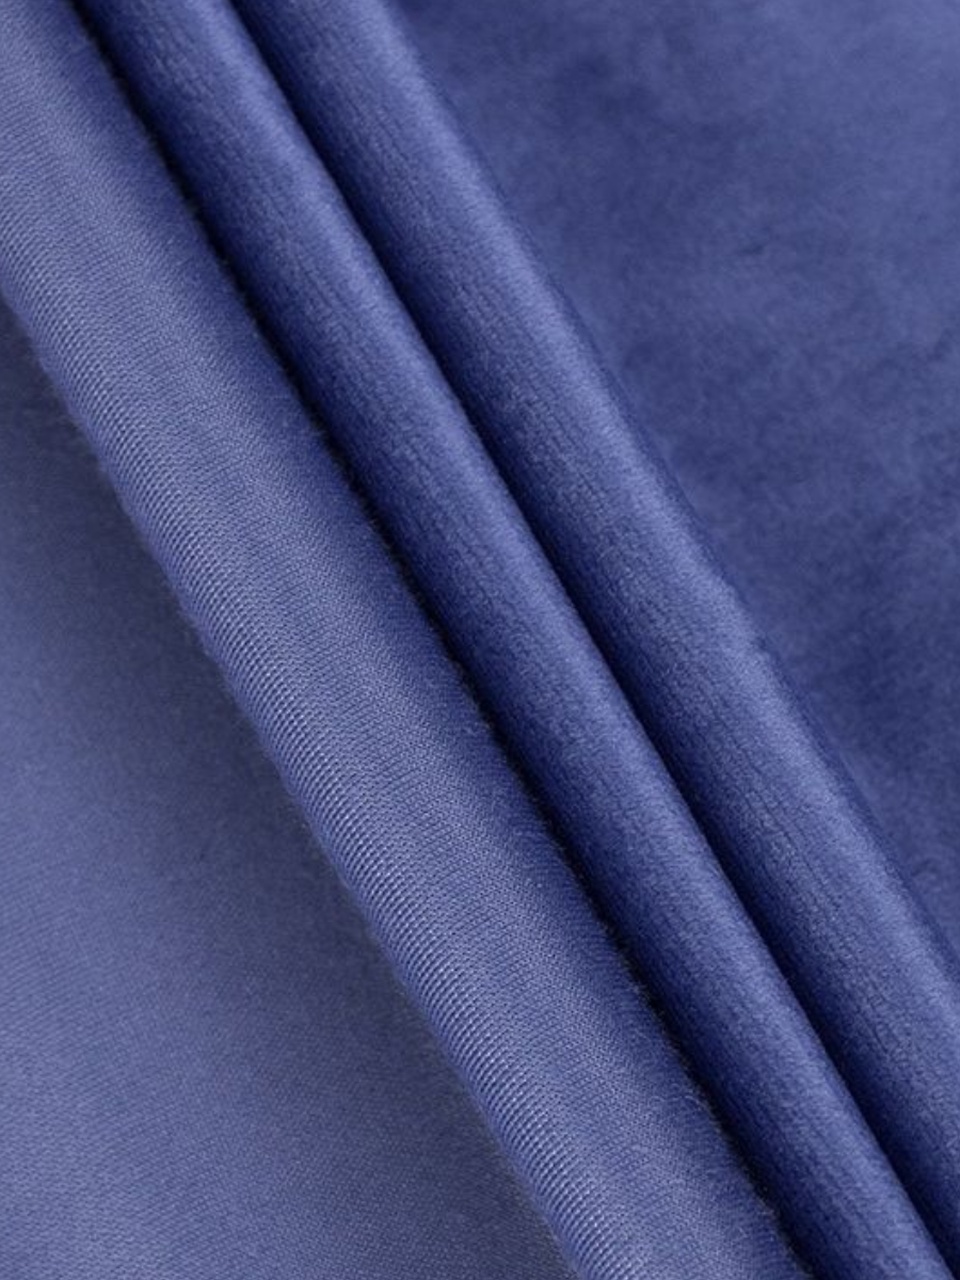 Портьеры  Бархат ярко-синий - 590 ₽, заказать онлайн.